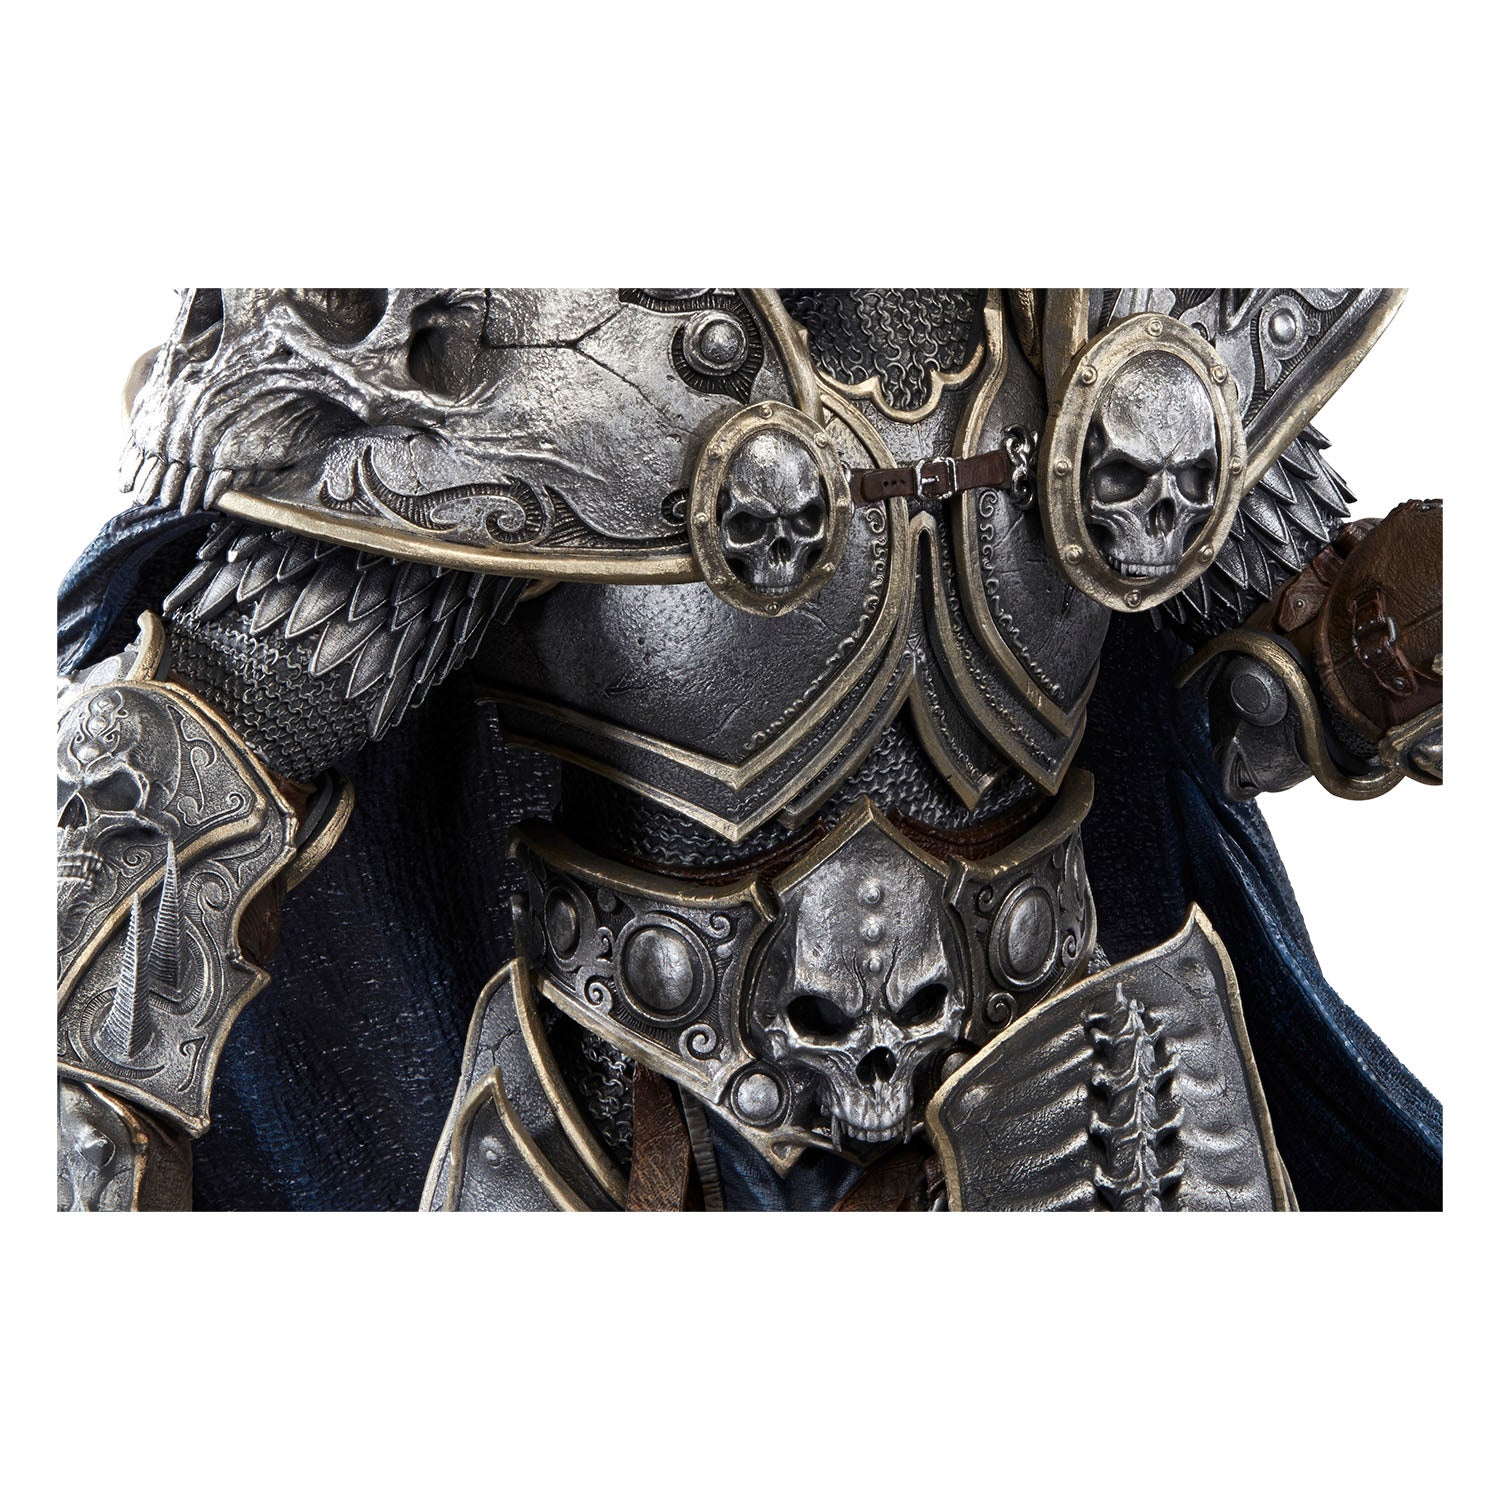 World of Warcraft Lich King Arthas Menethil 66cm Premium Statue